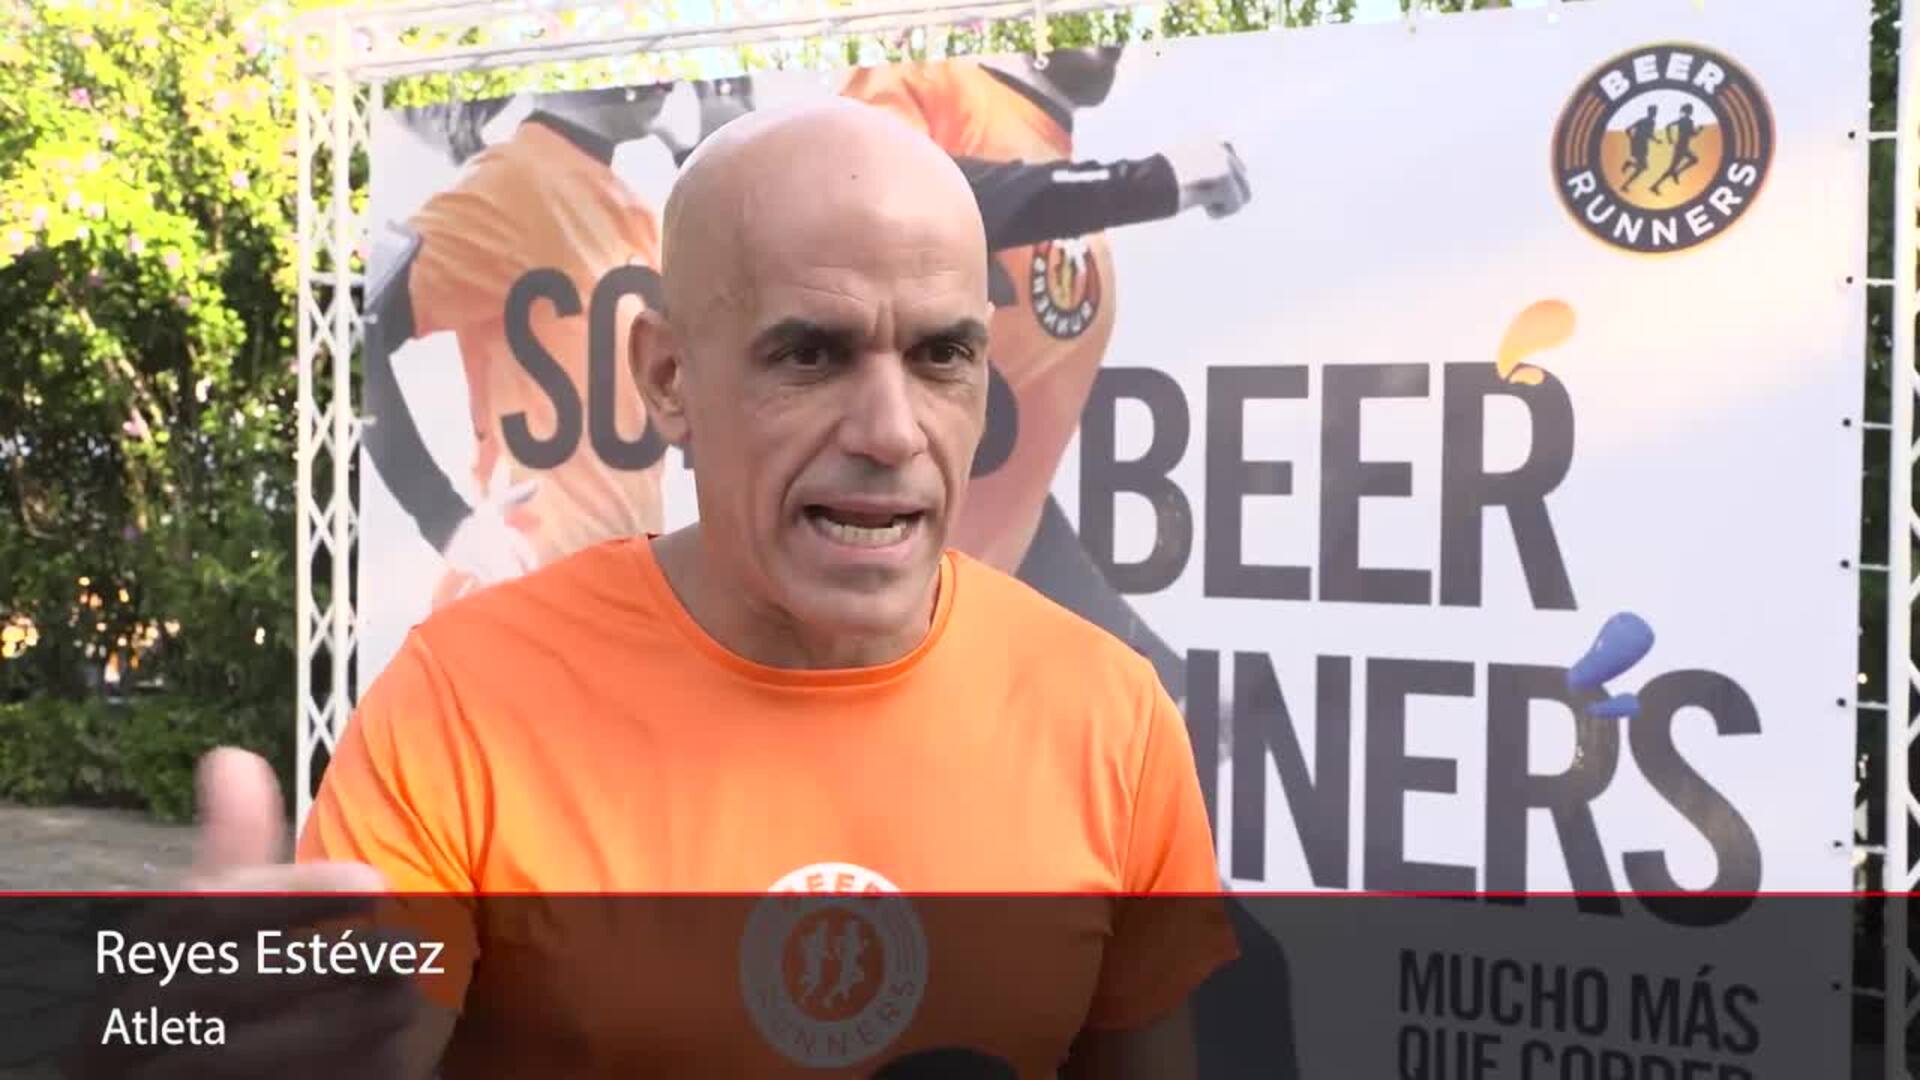 Vuelve la carrera Beer Runners: más de 5.000 corredores promoviendo un estilo de vida mediterráneo